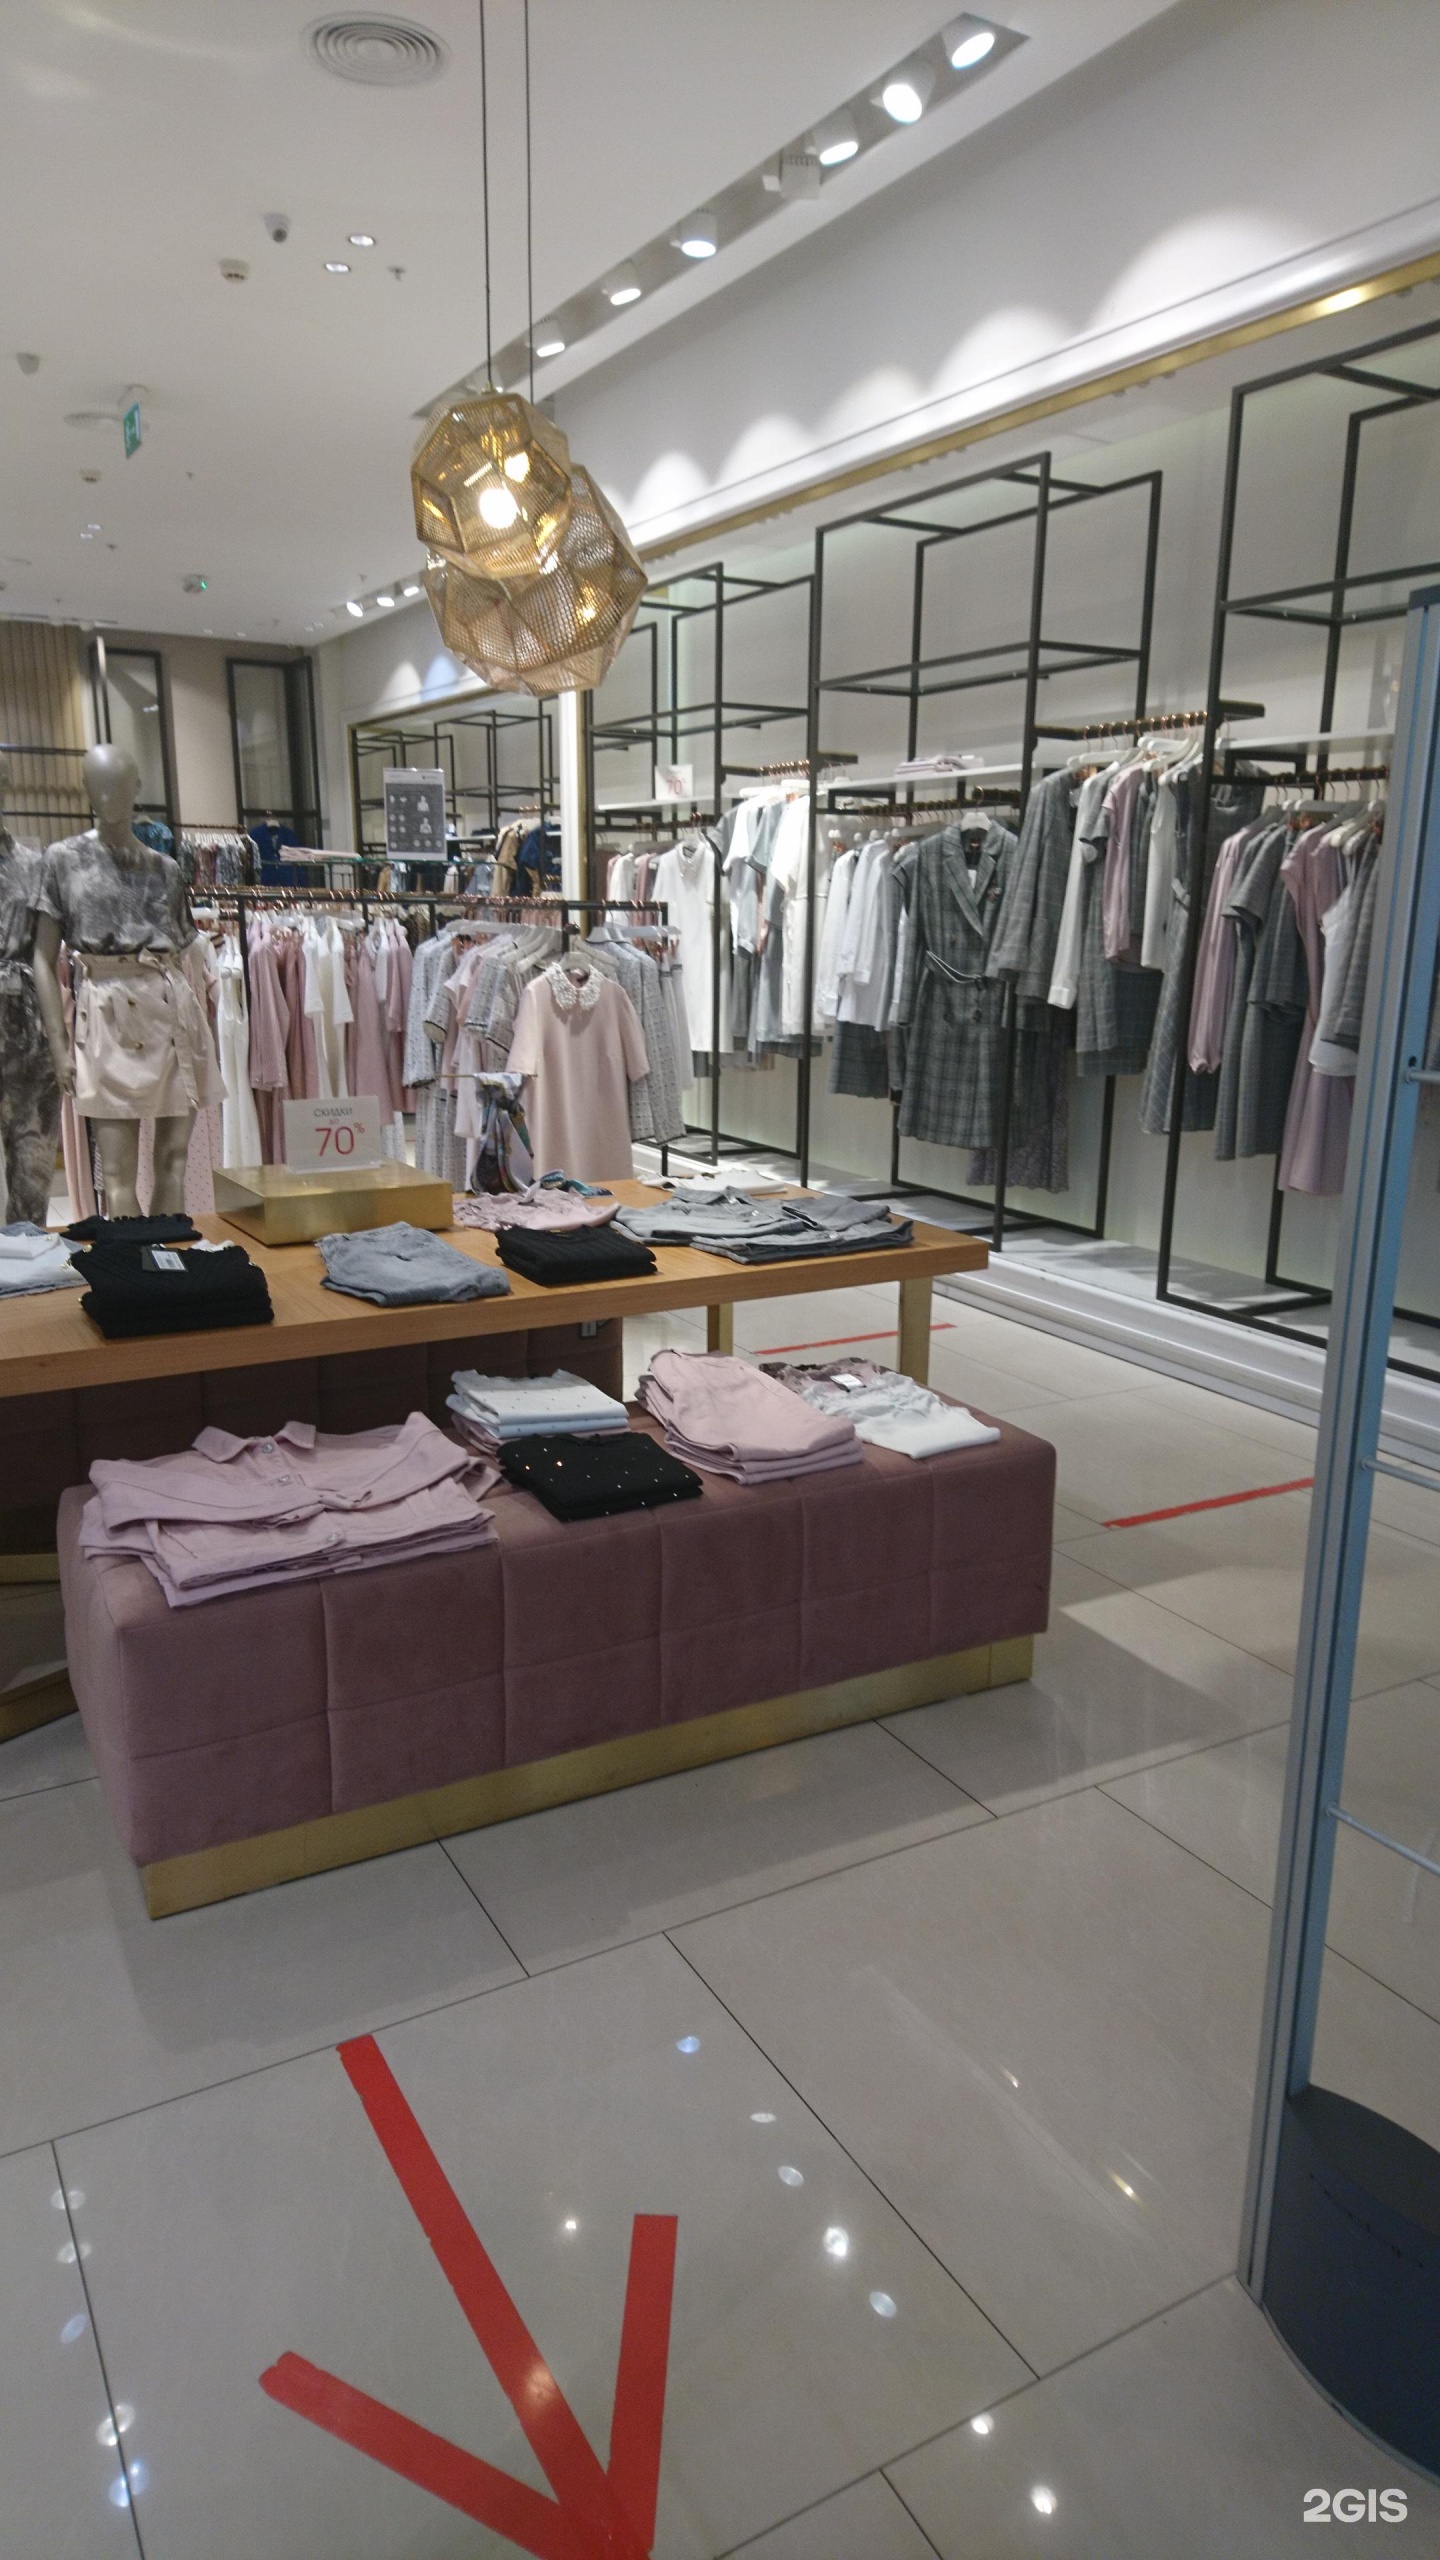 Магазин Женской Одежды Лусио